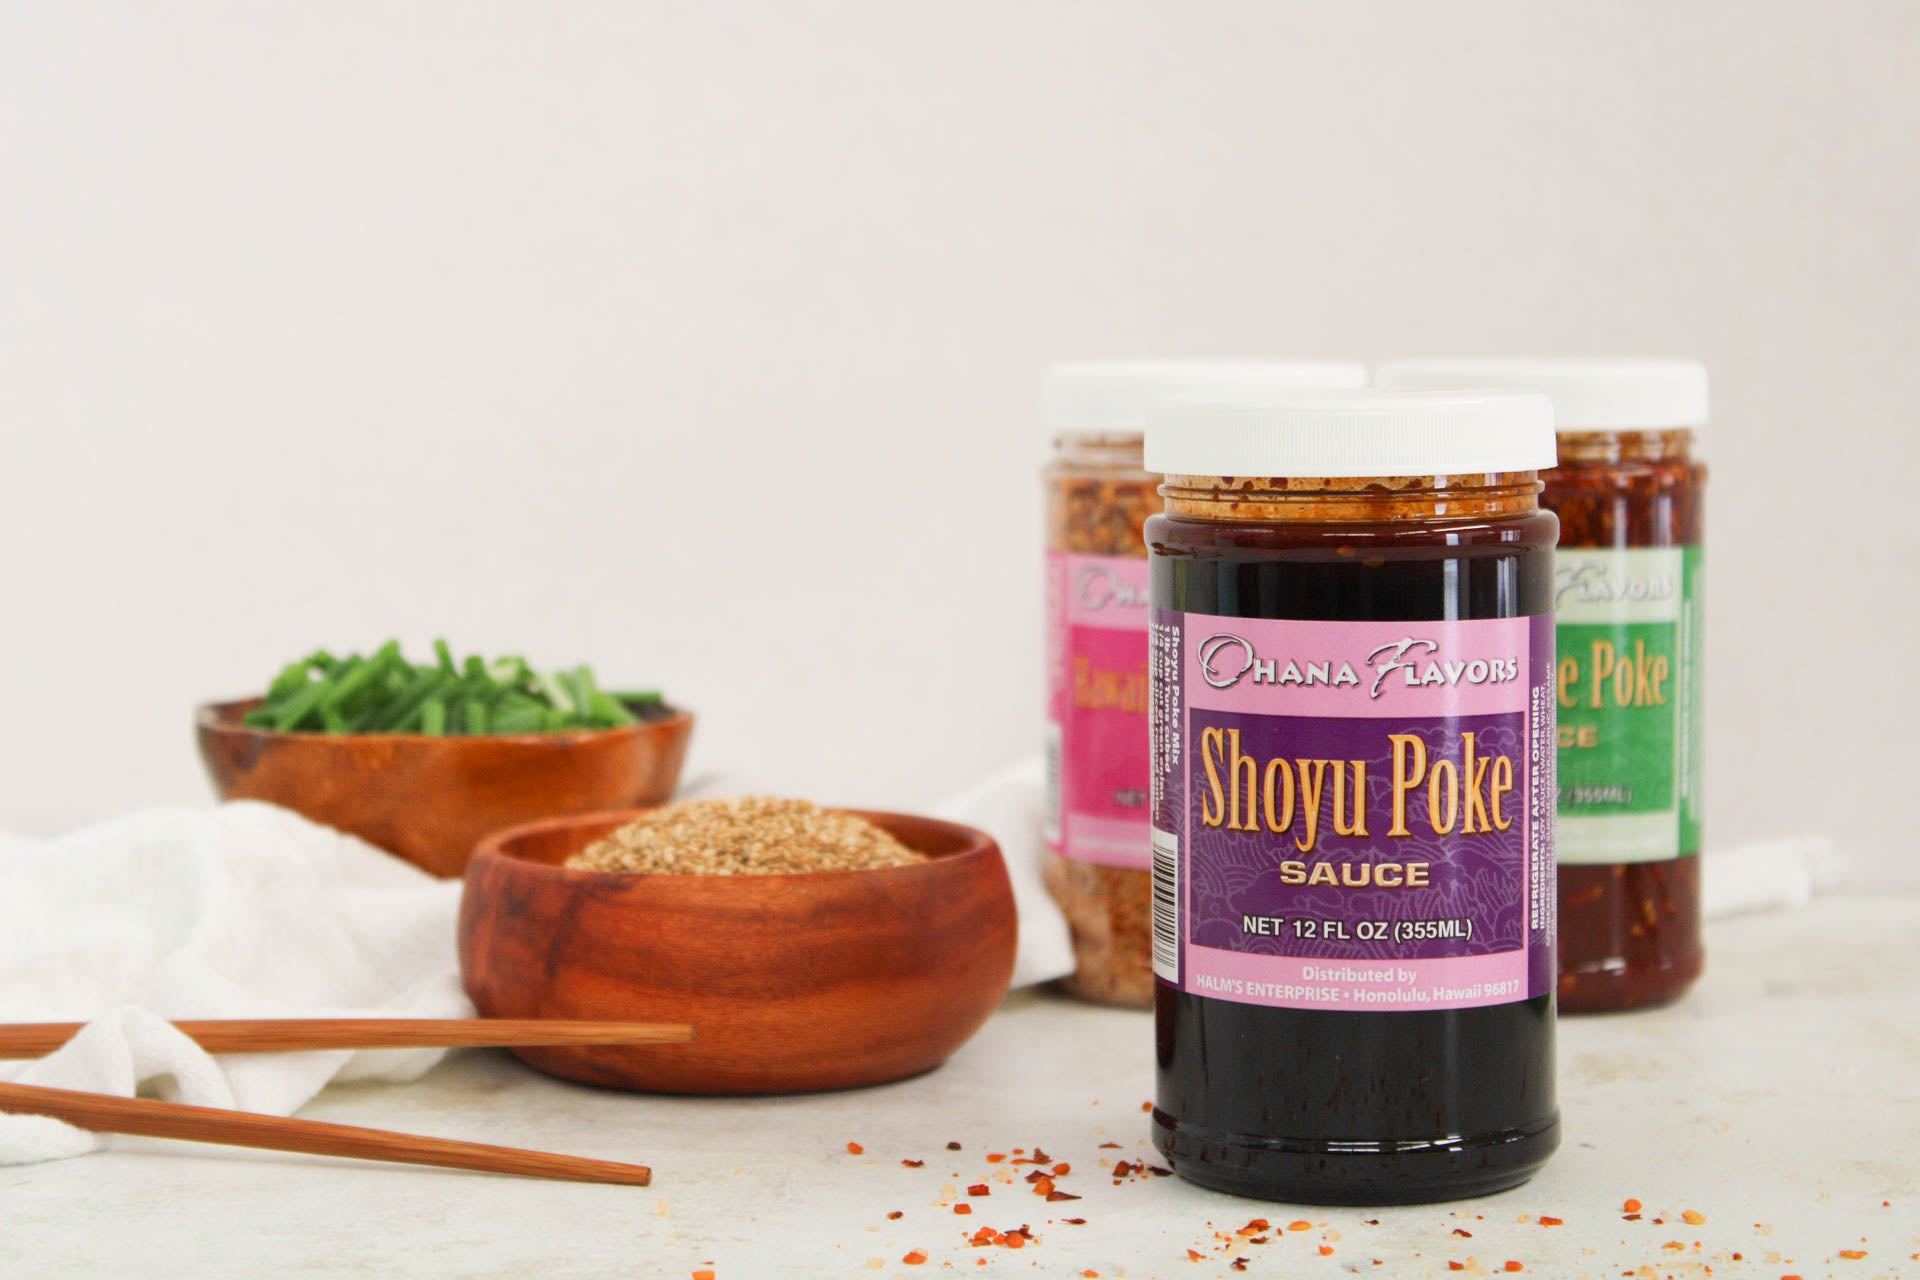 Sauce Piquante Shoyu – Pack de 3 – shoyurestaurant